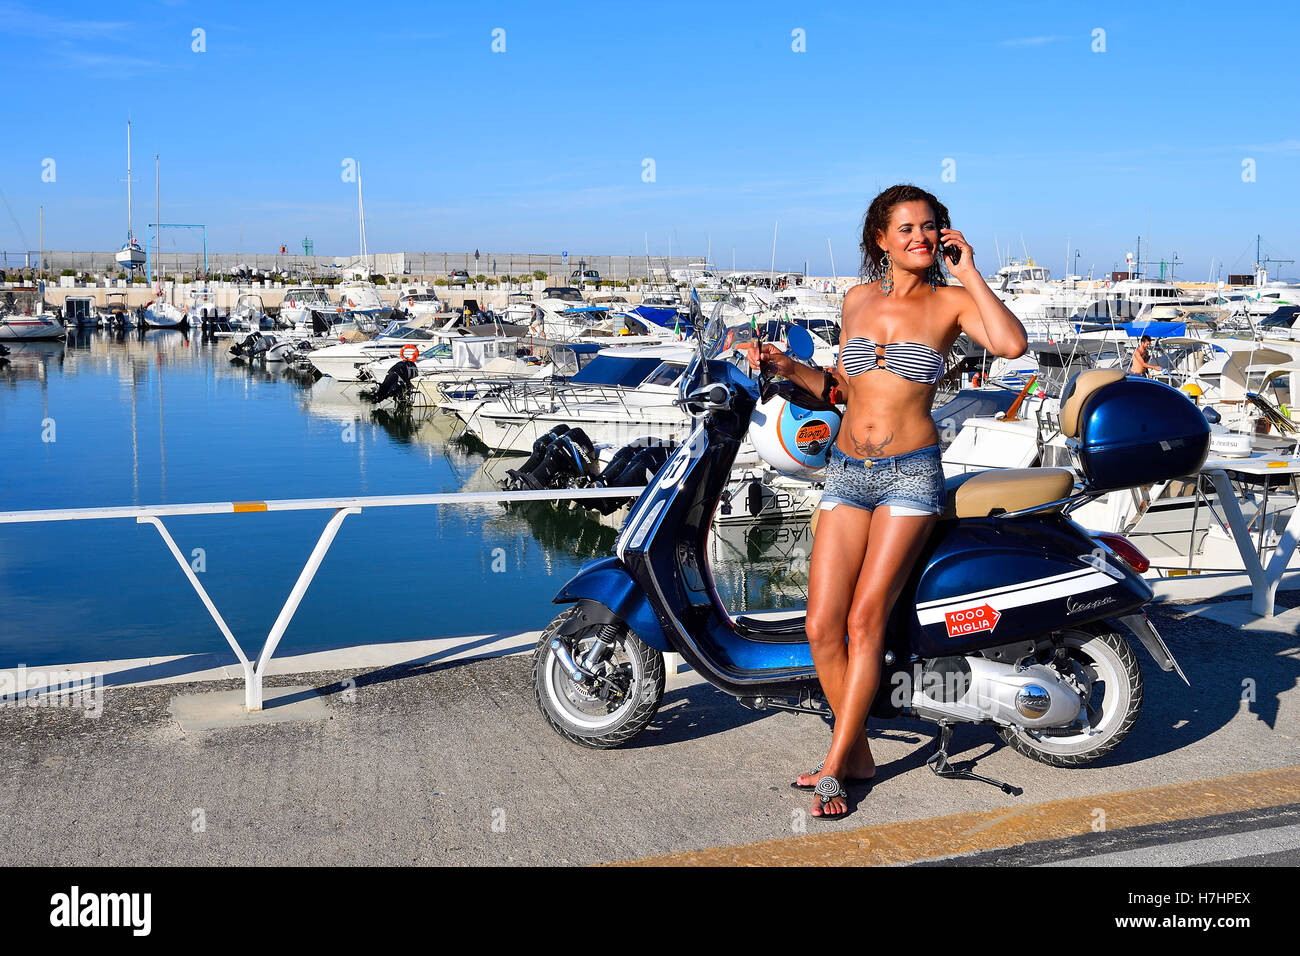 Frau im Bikini-Oberteil mit Handy lehnt sich an eine Vespa Primavera Roller, Senigallia, Adria-Küste, Marche, Italien Stockfoto